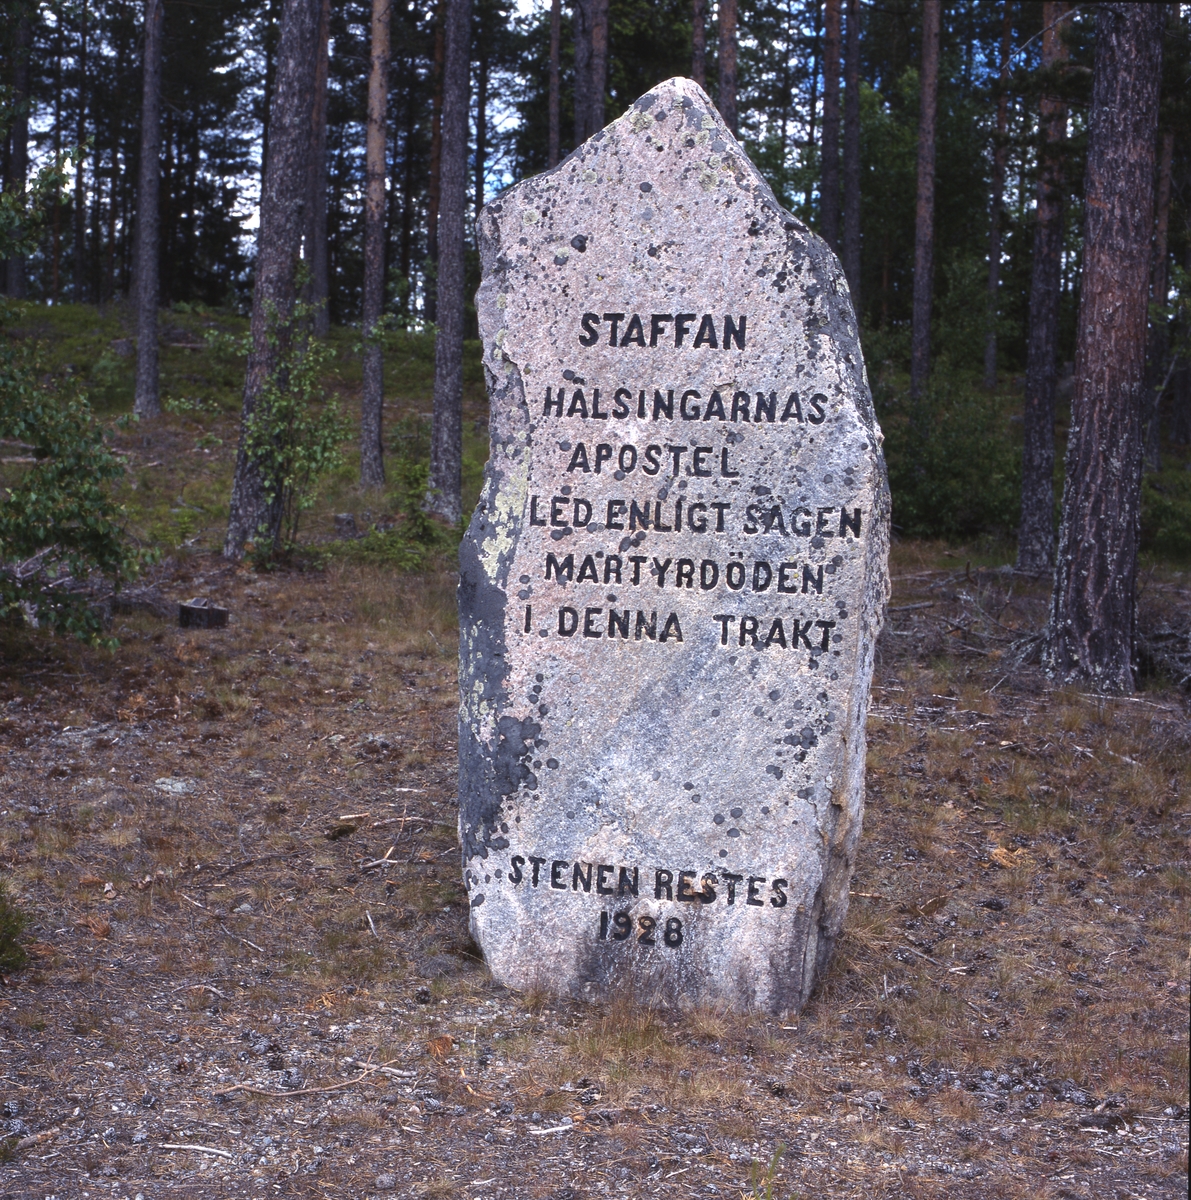 Staffansstenen med inskriptionen "Staffan hälsingarnas apostel led enligt sägen martyrdöden i denna trakt. Stenen restes 1928". Själstuga, maj 2001.